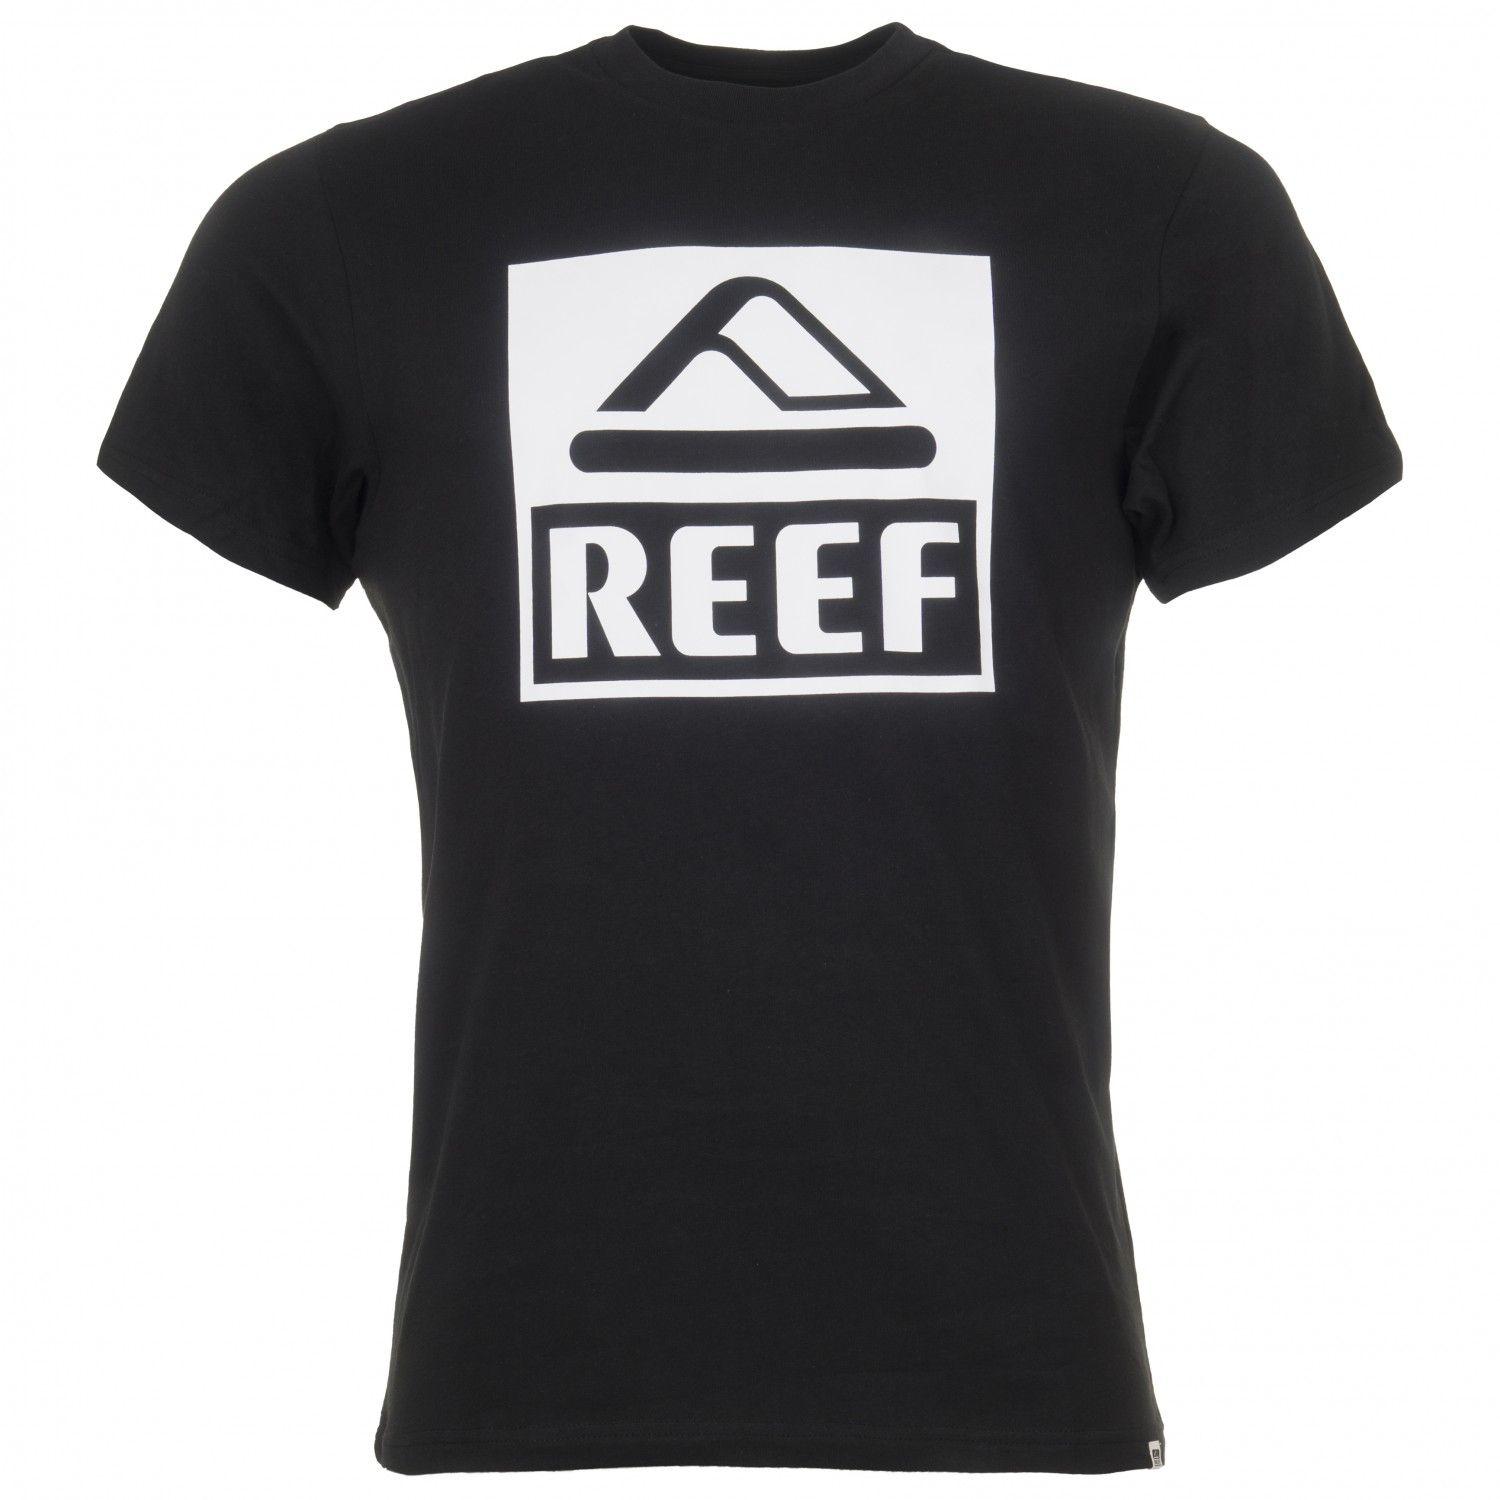 Reef Logo - Reef Logo Tee Big Shirt Men's